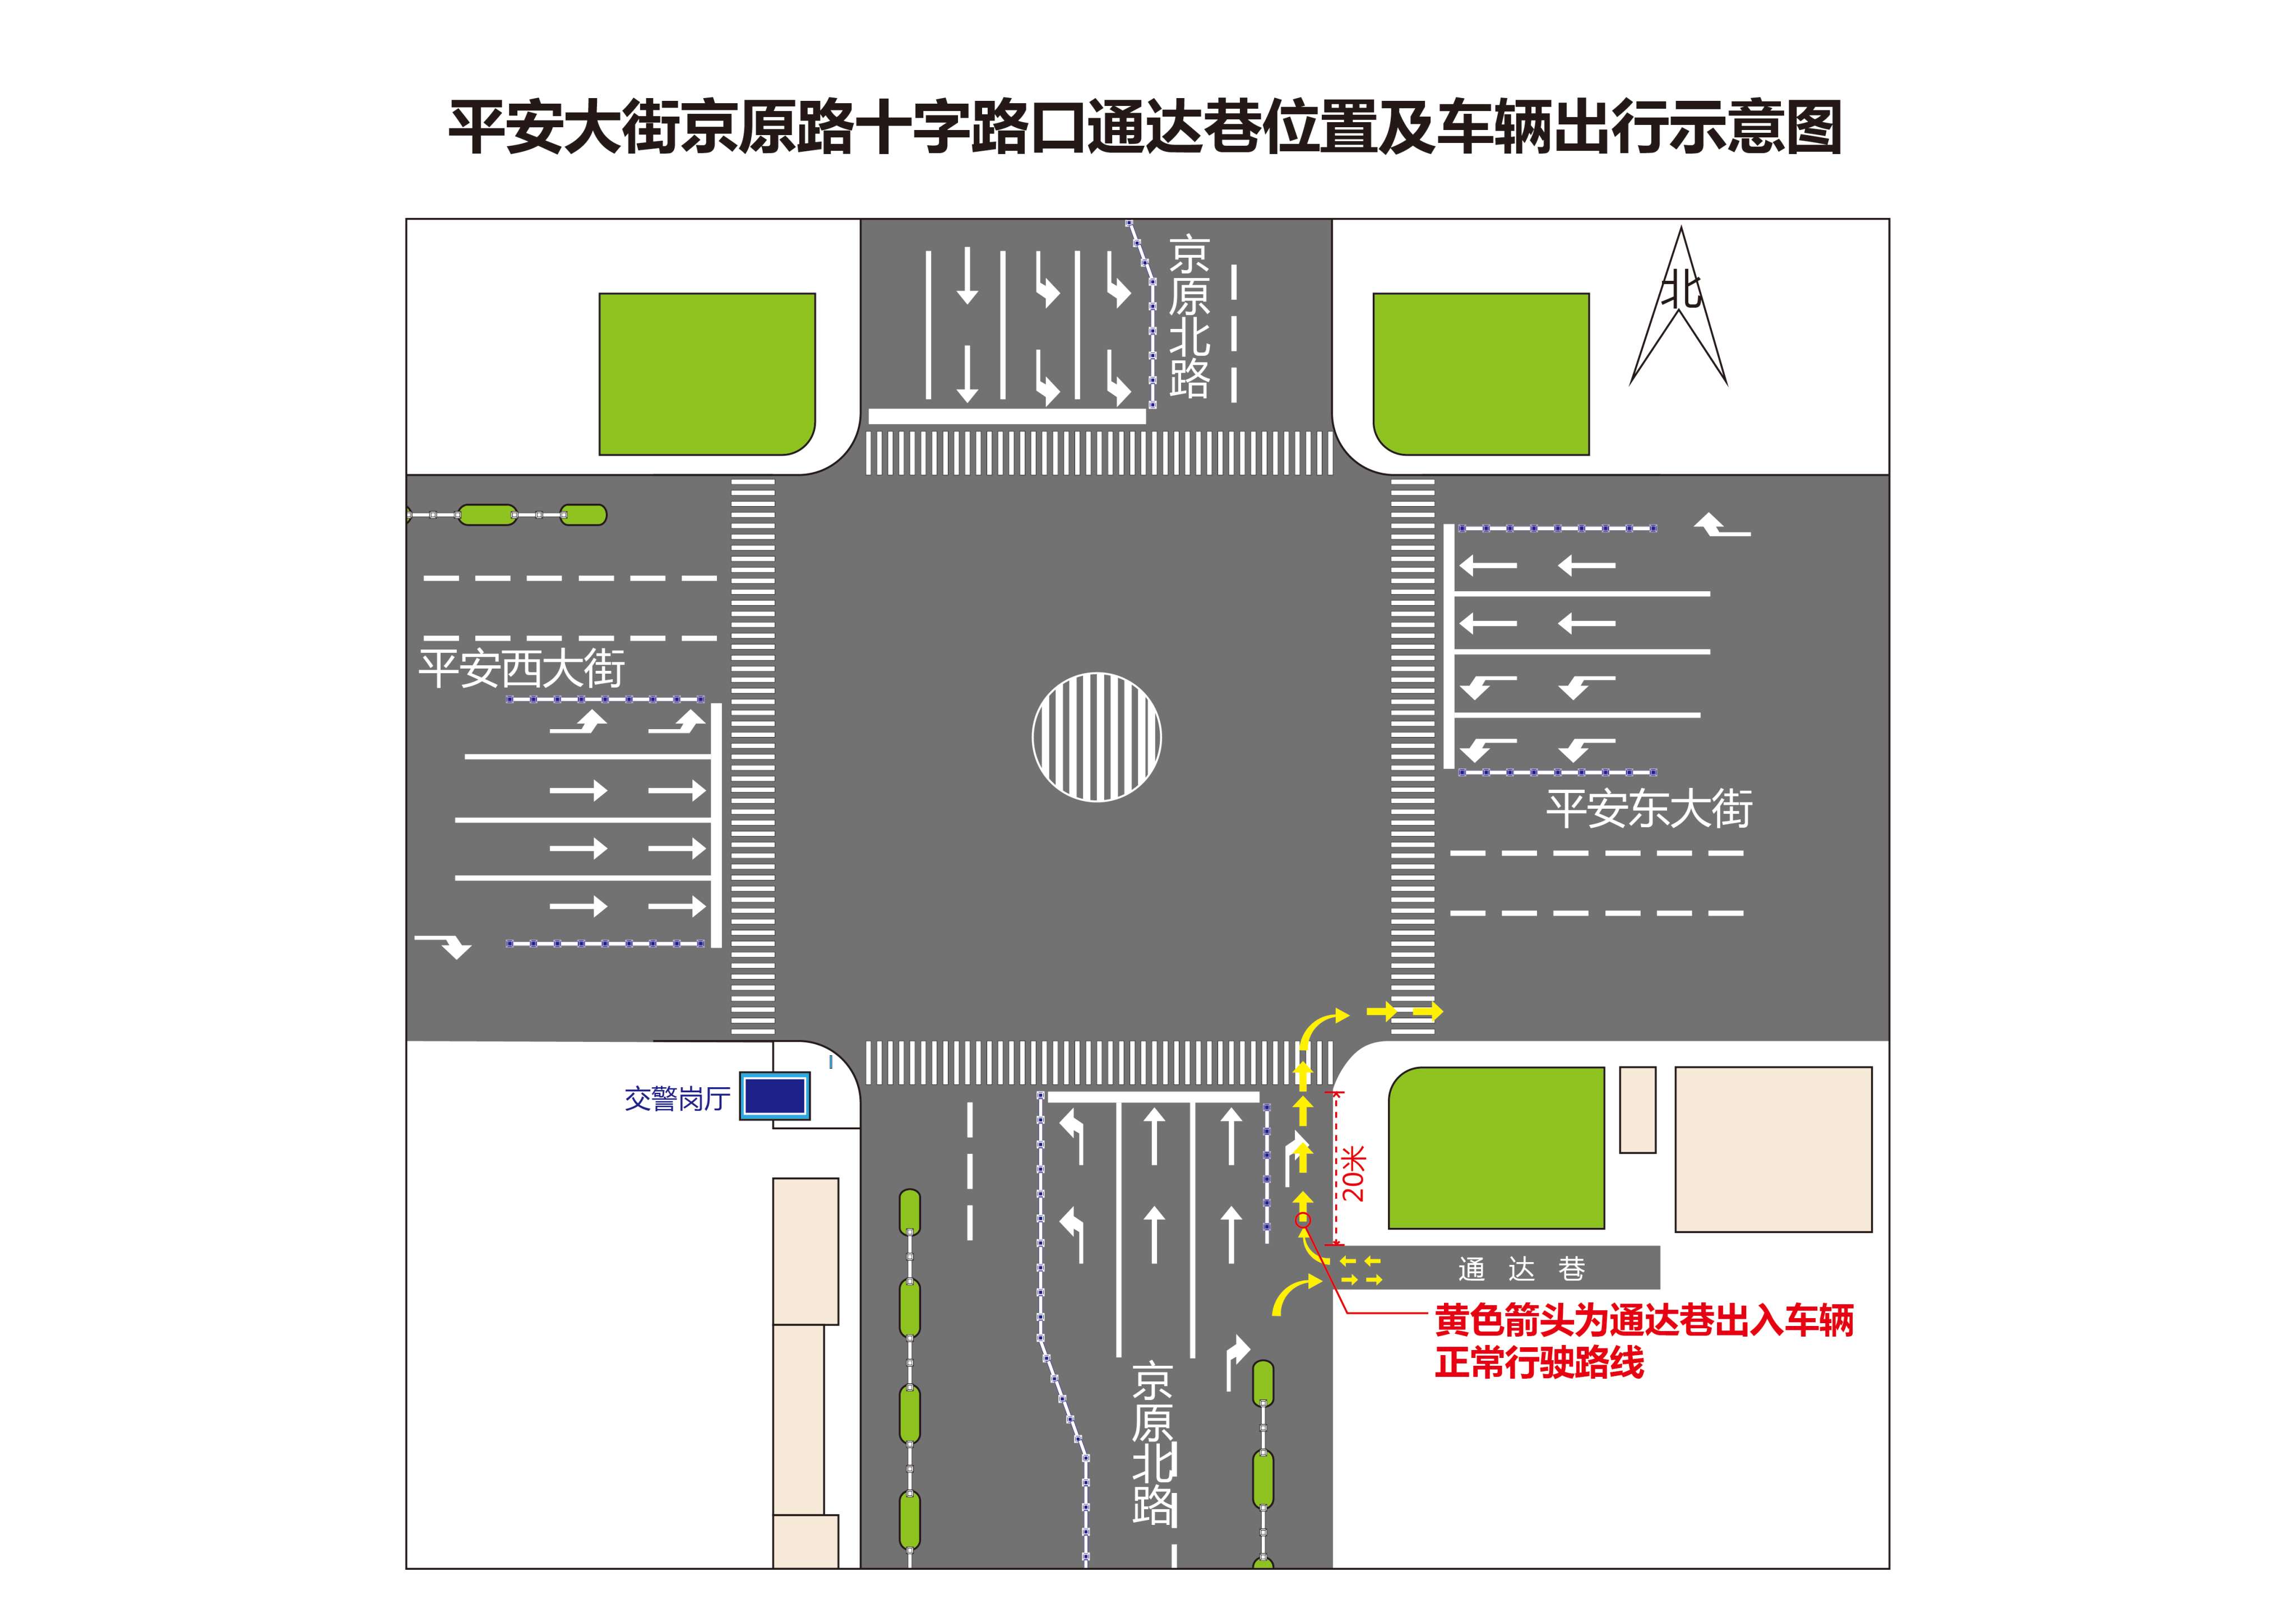 十字路口南50米处利用移动设备对车辆逆行和变道穿插加塞的交通违法